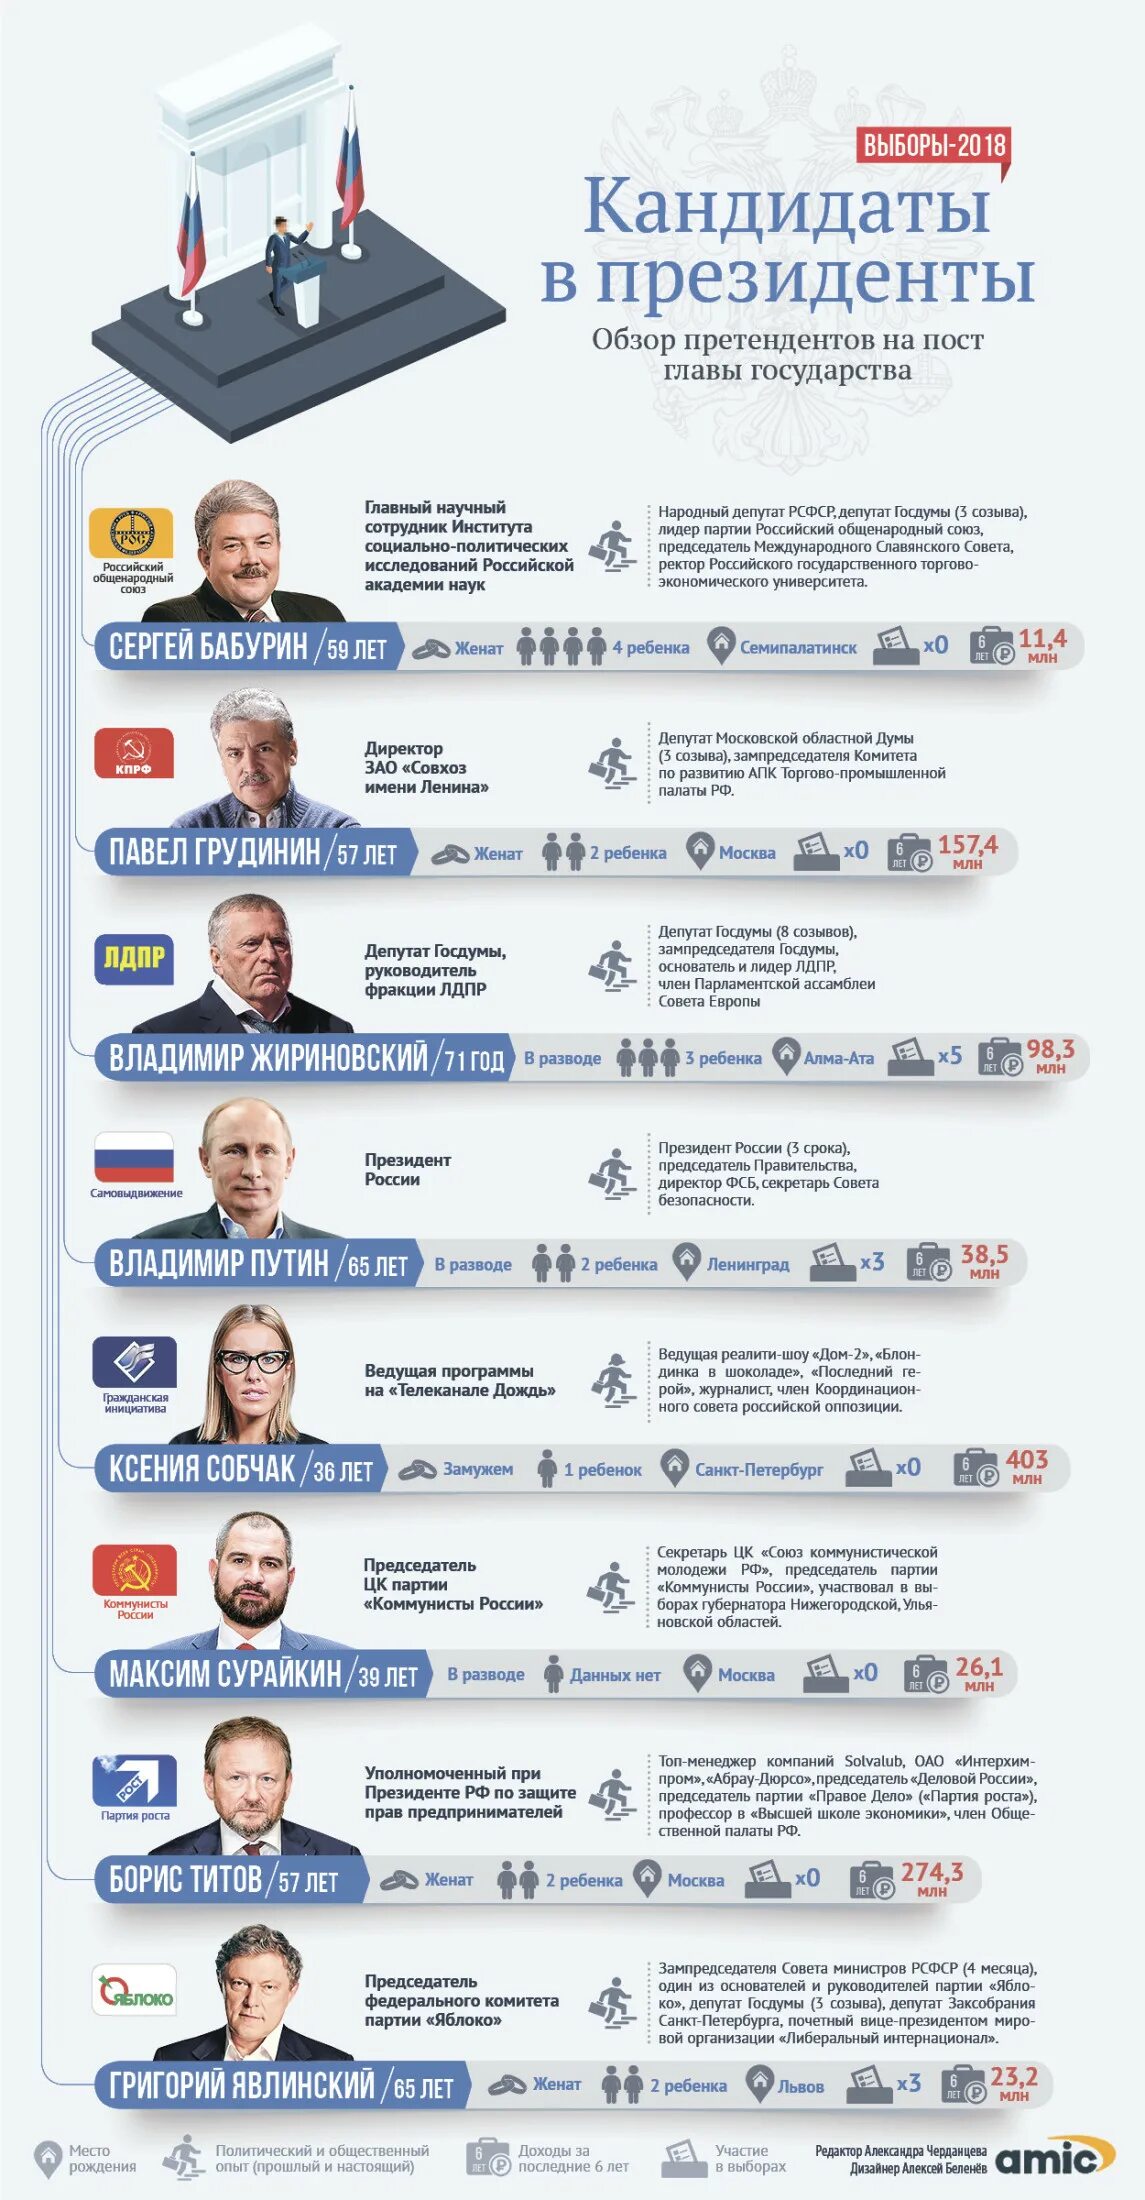 Итоги прошлых выборов президента. Выборы президента России 2018 кандидаты.